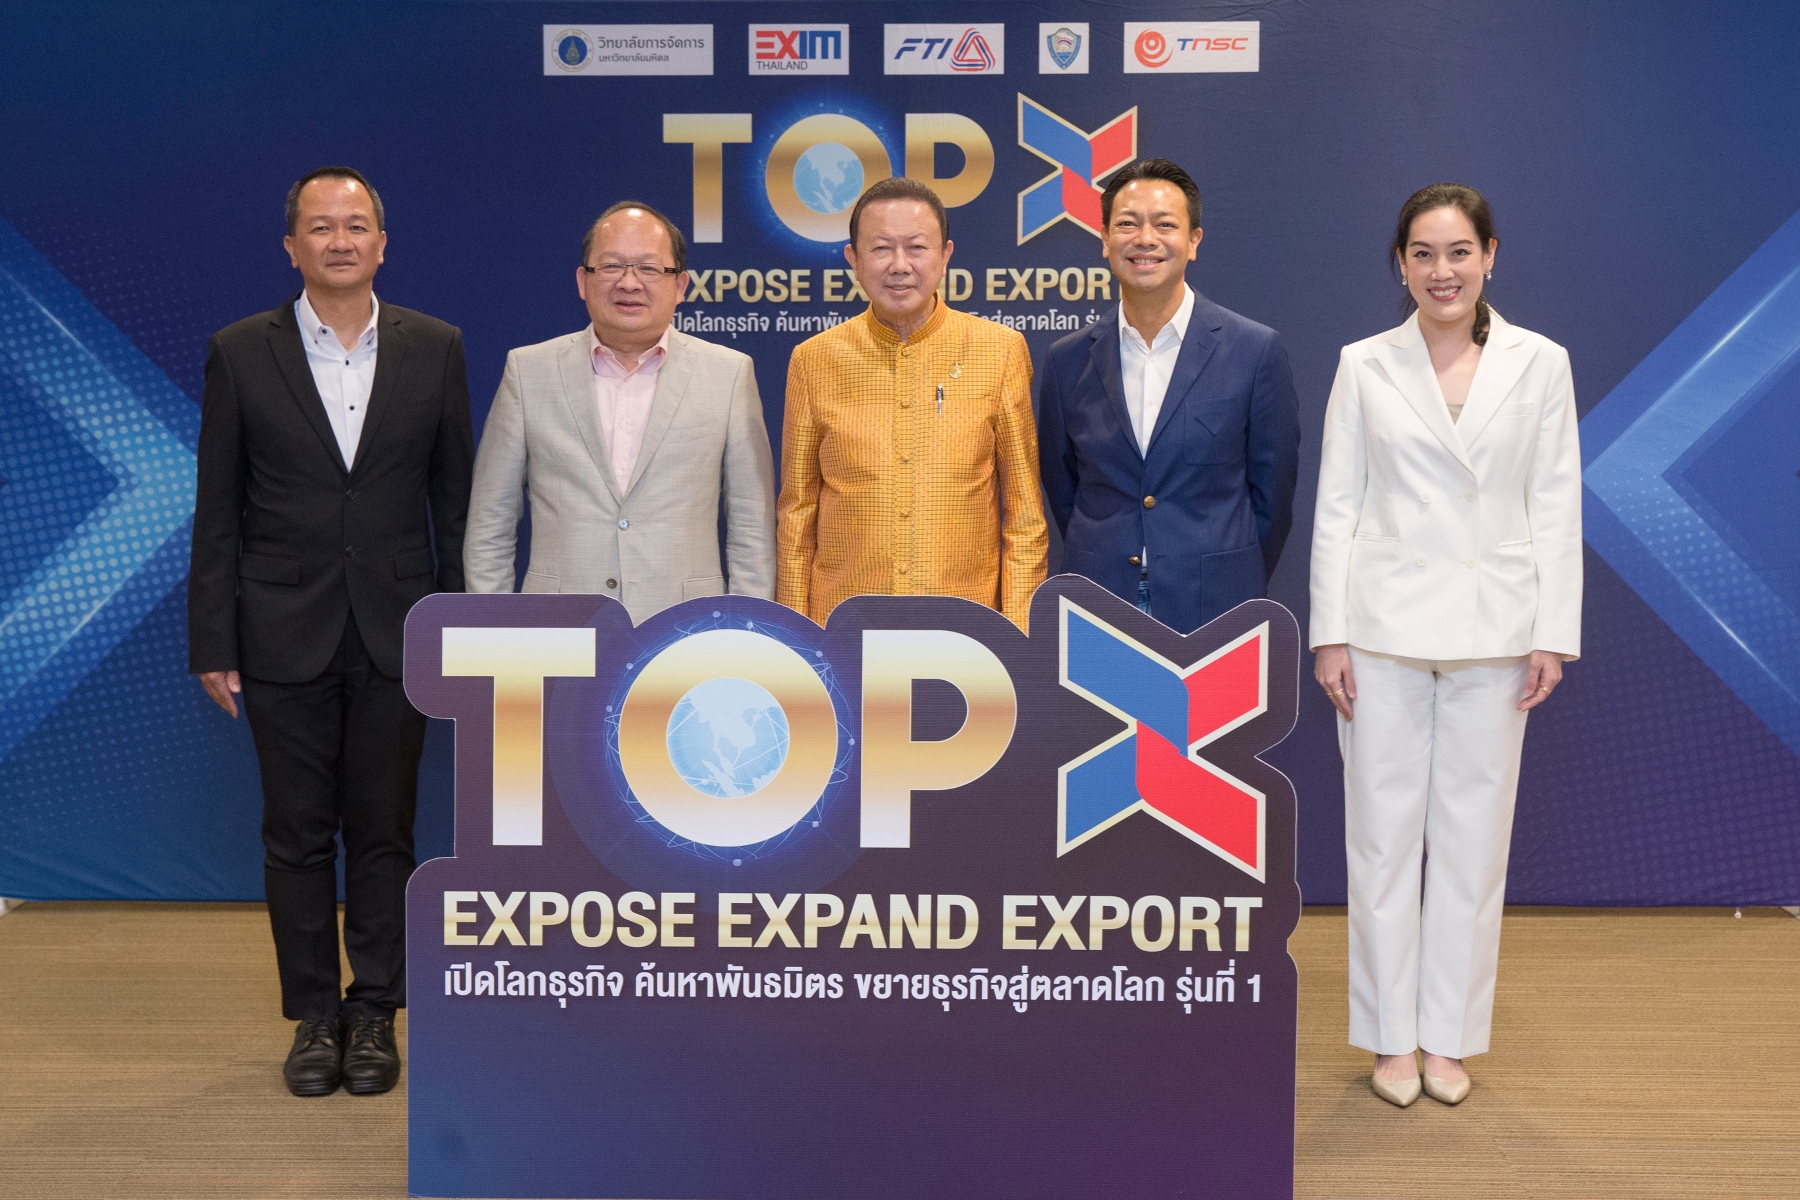 EXIM BANK สานพลังสภาหอฯ ส.อ.ท. สรท. พร้อมด้วย CMMU เสวนาหาทางออกของธุรกิจไทยหลังโควิด-19 ในหลักสูตรสร้างนักธุรกิจระหว่างประเทศชั้นแนวหน้า “TOP X”